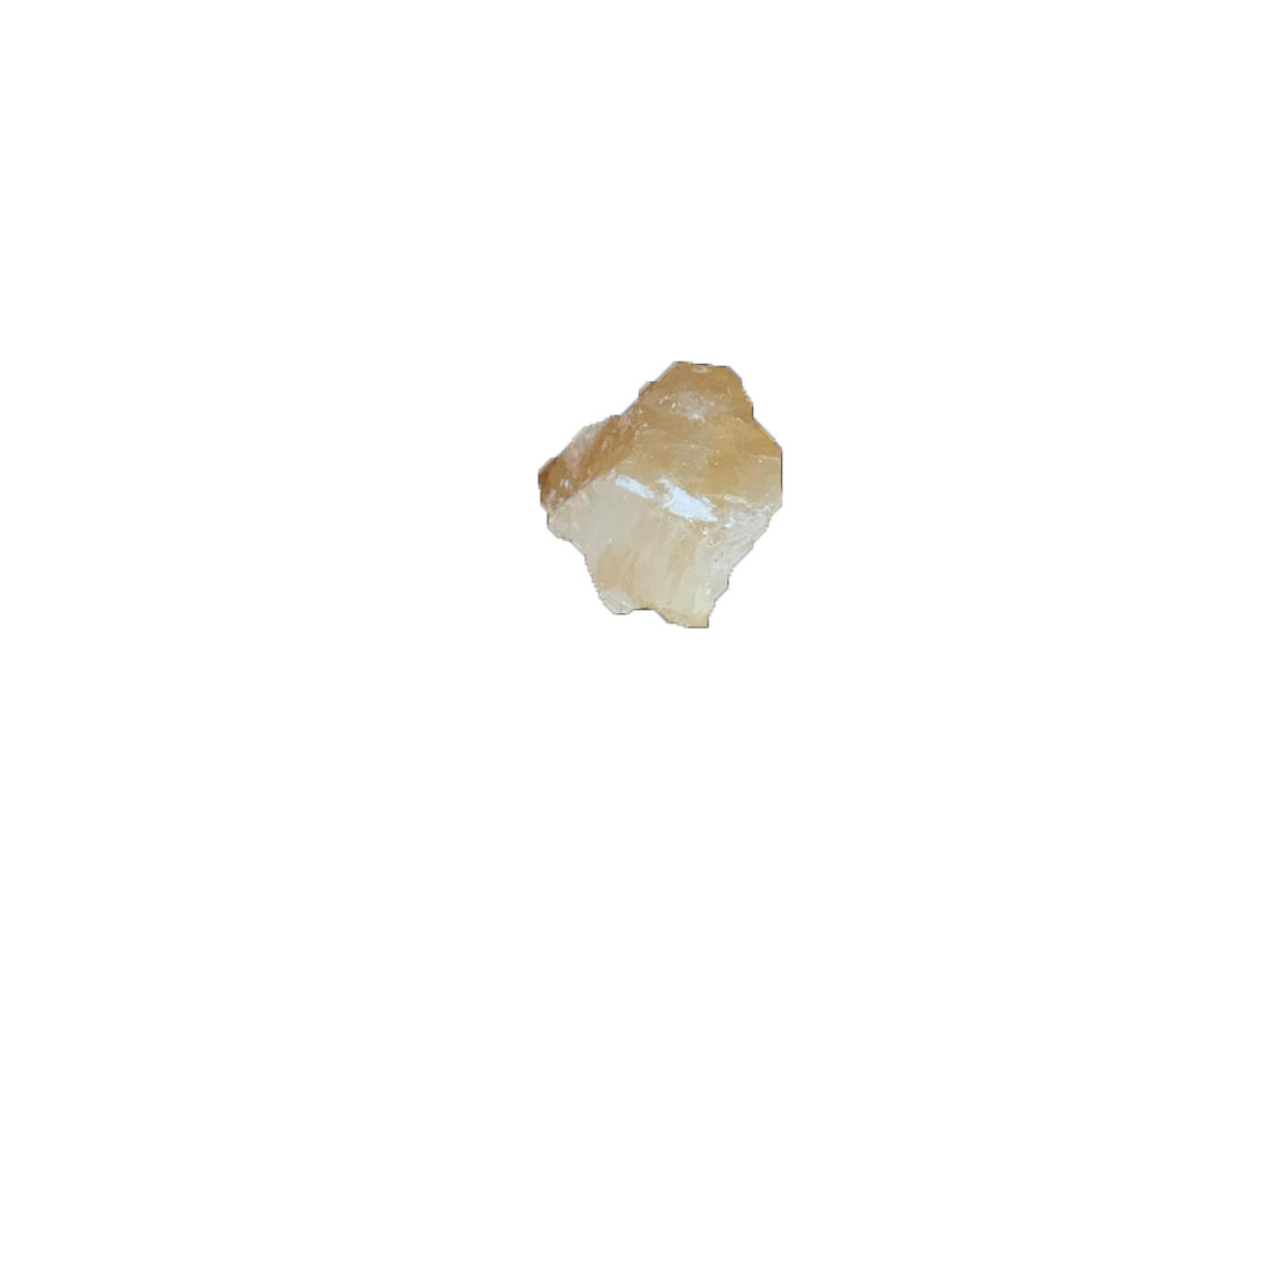 Tumbled Golden Calcite